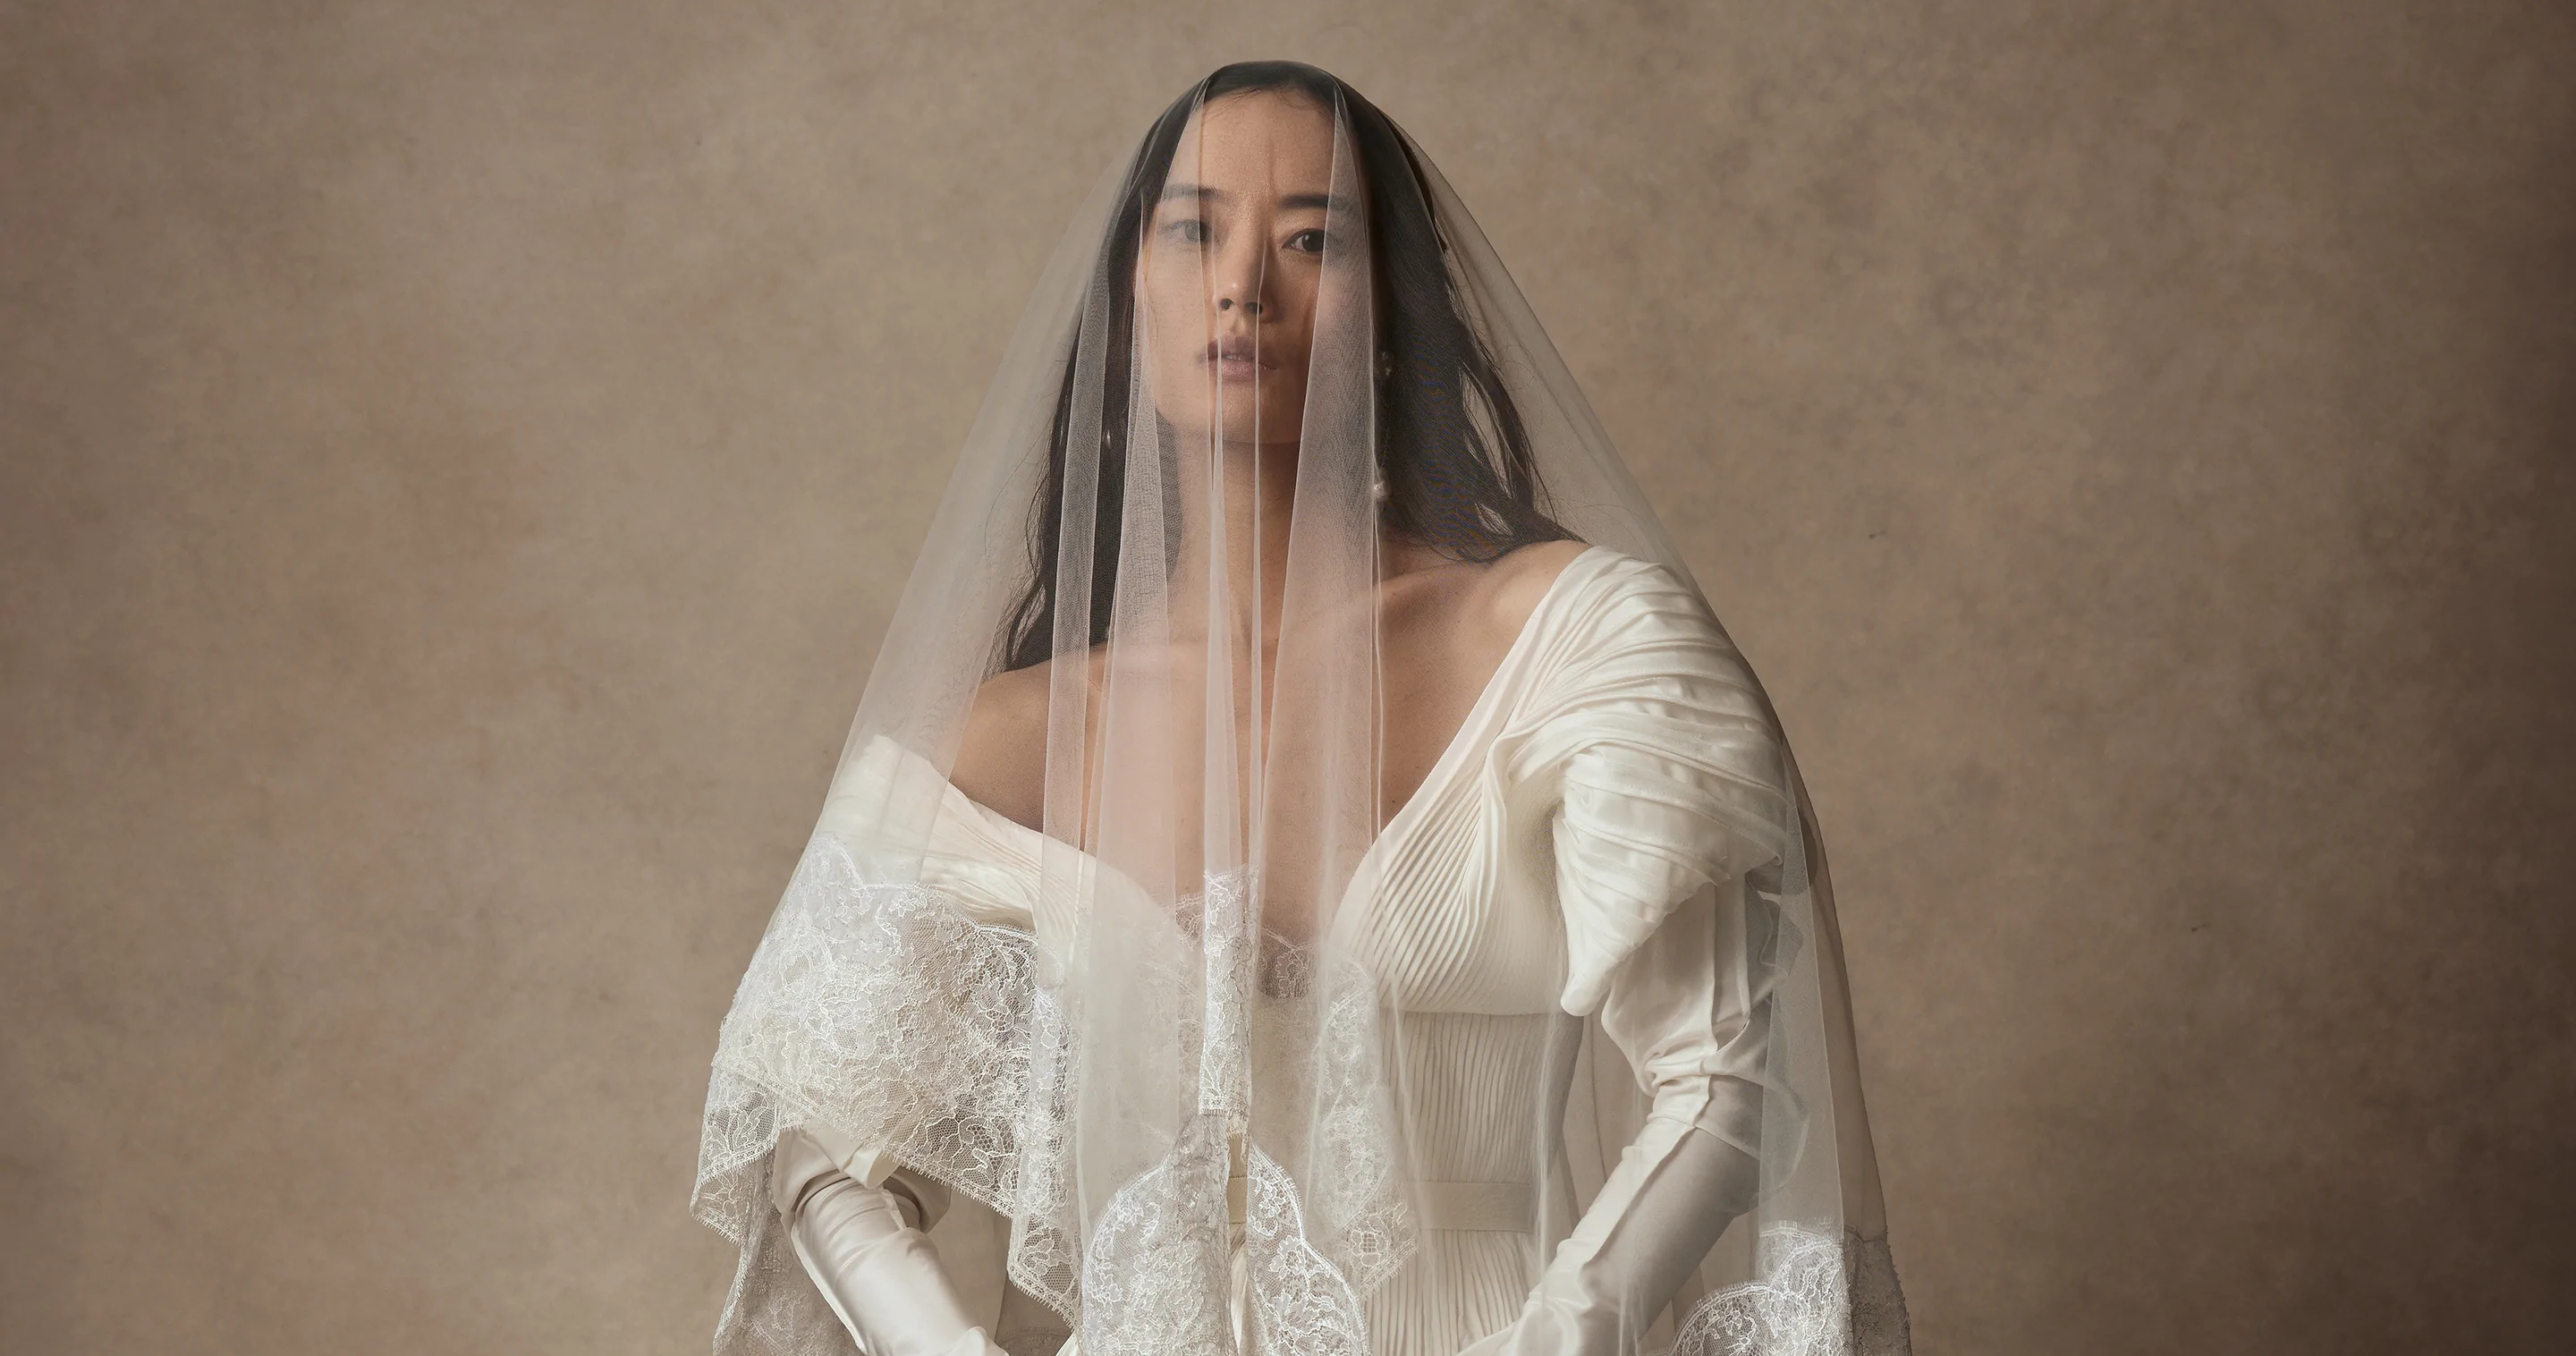 24 идеи для образа невесты на венчание